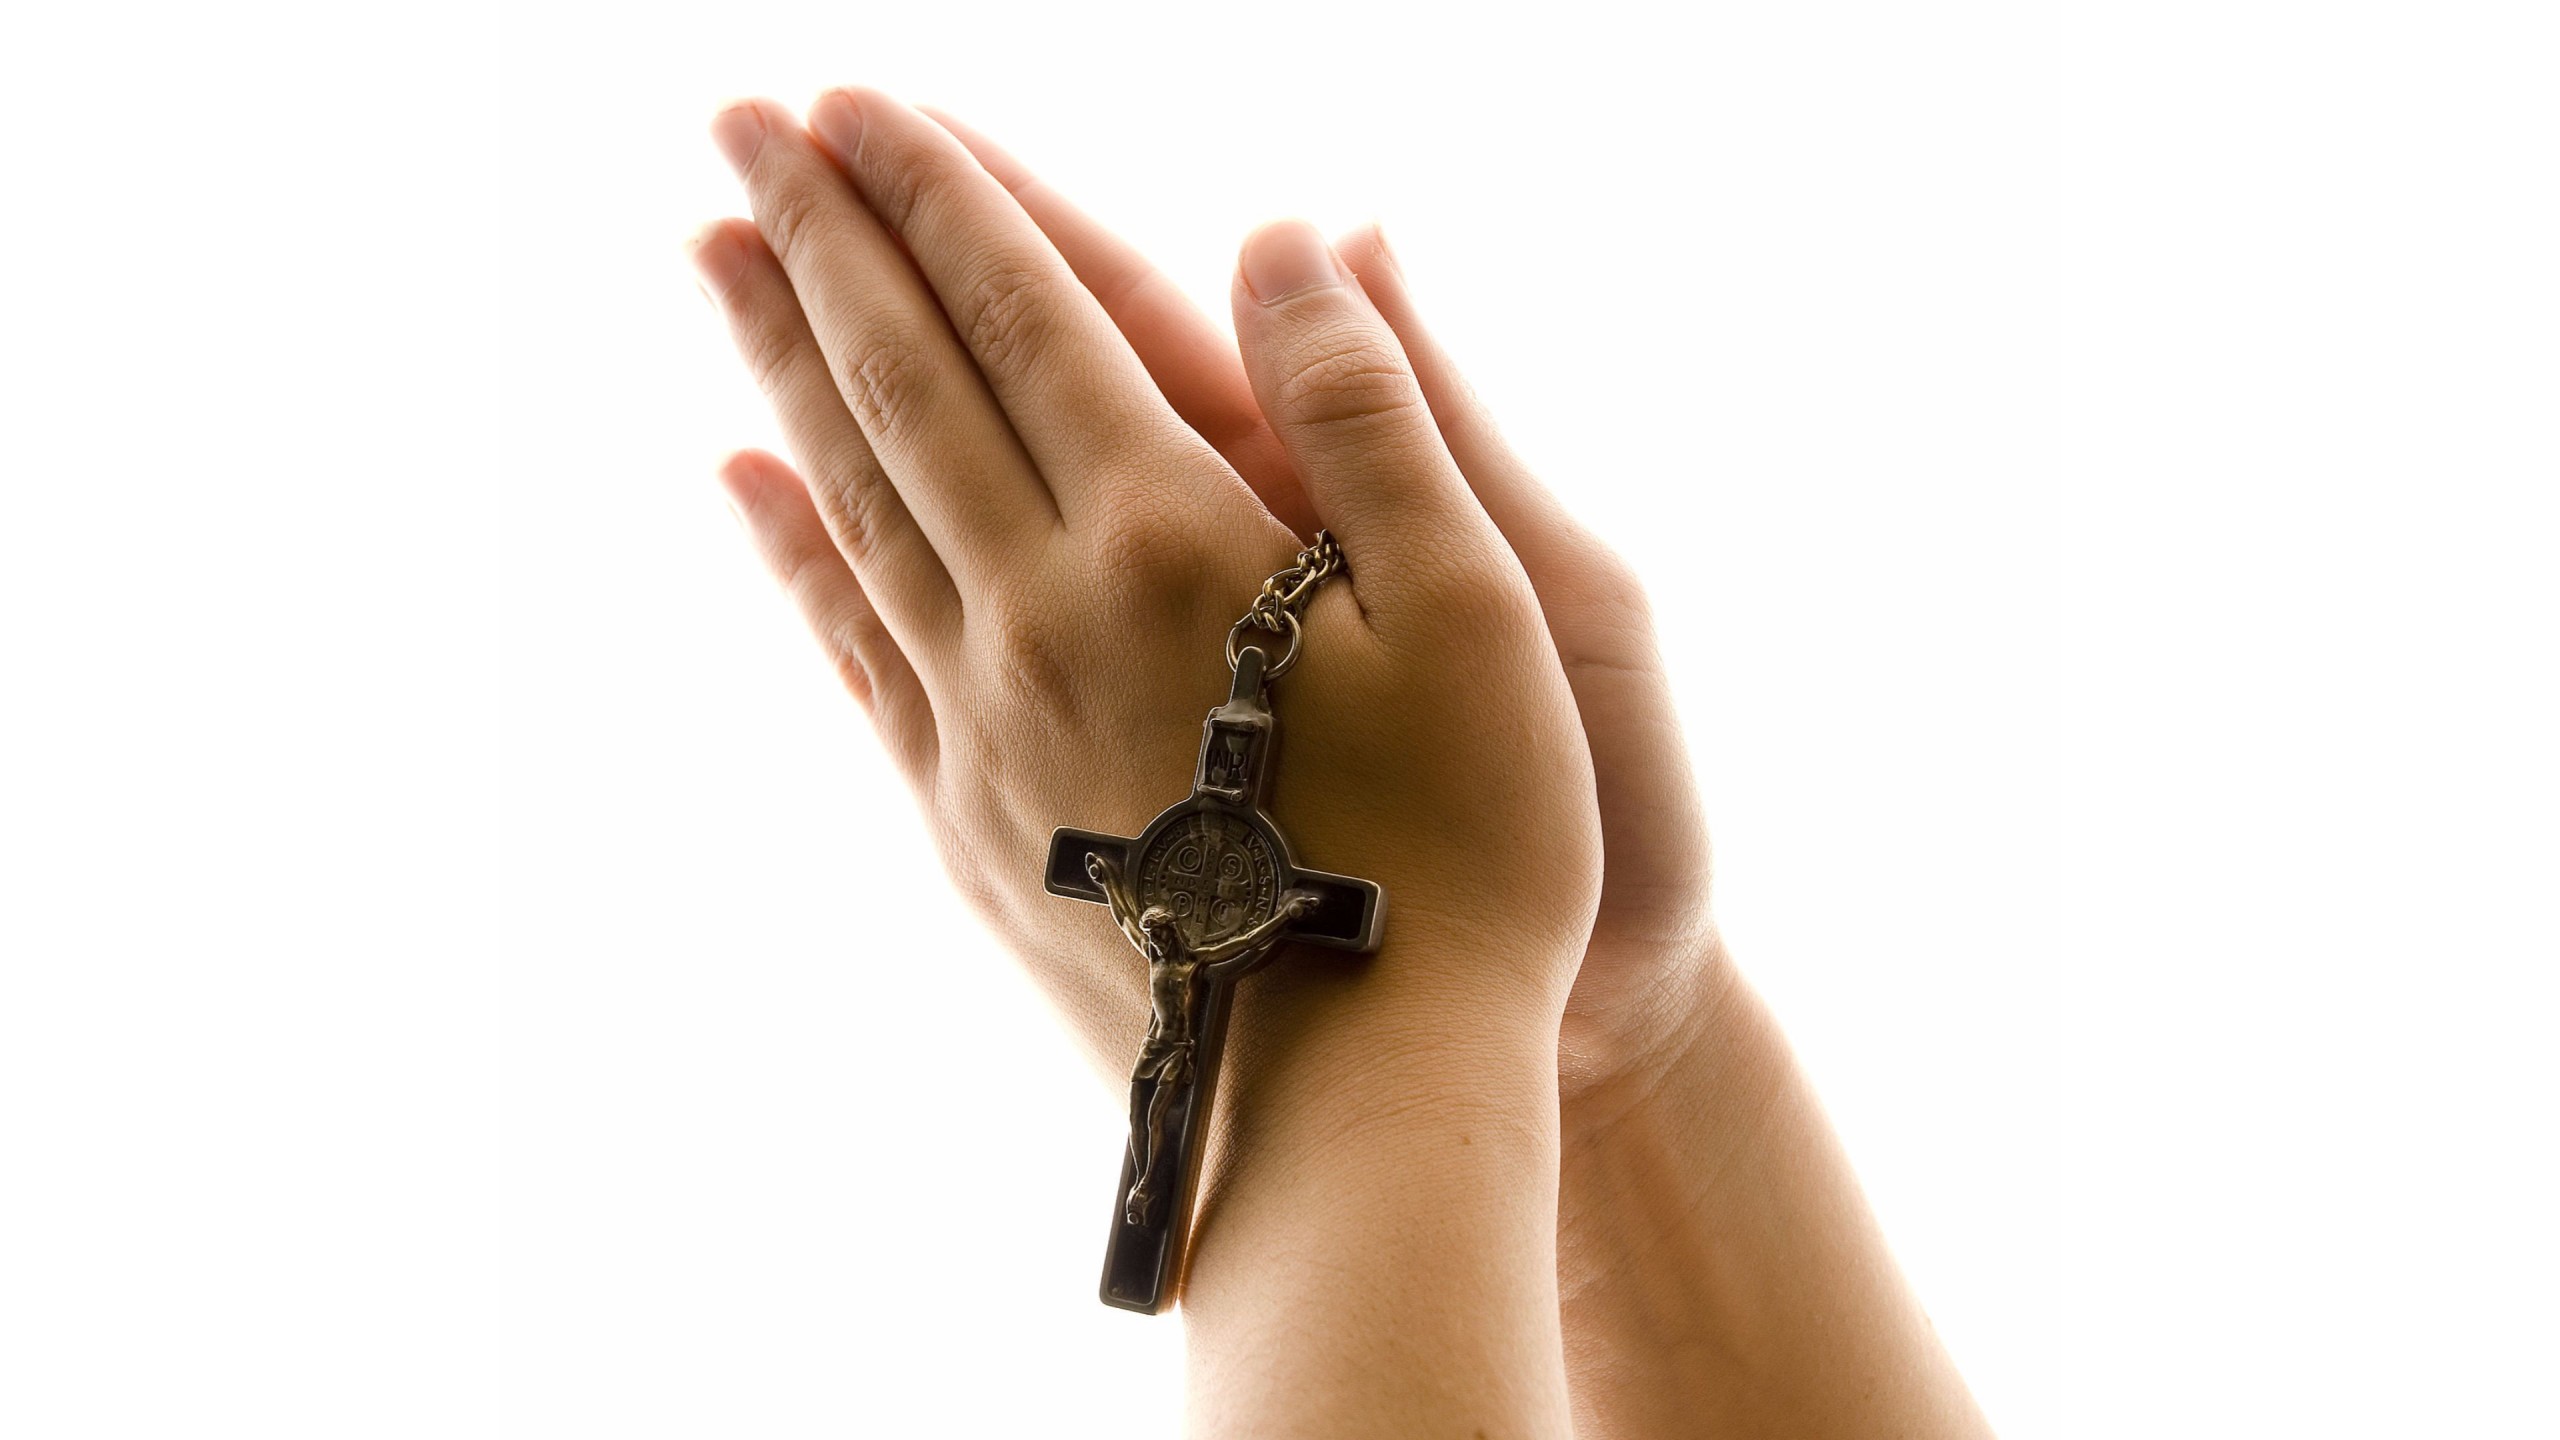 praying hands wallpaper,hand,finger,wrist,arm,joint